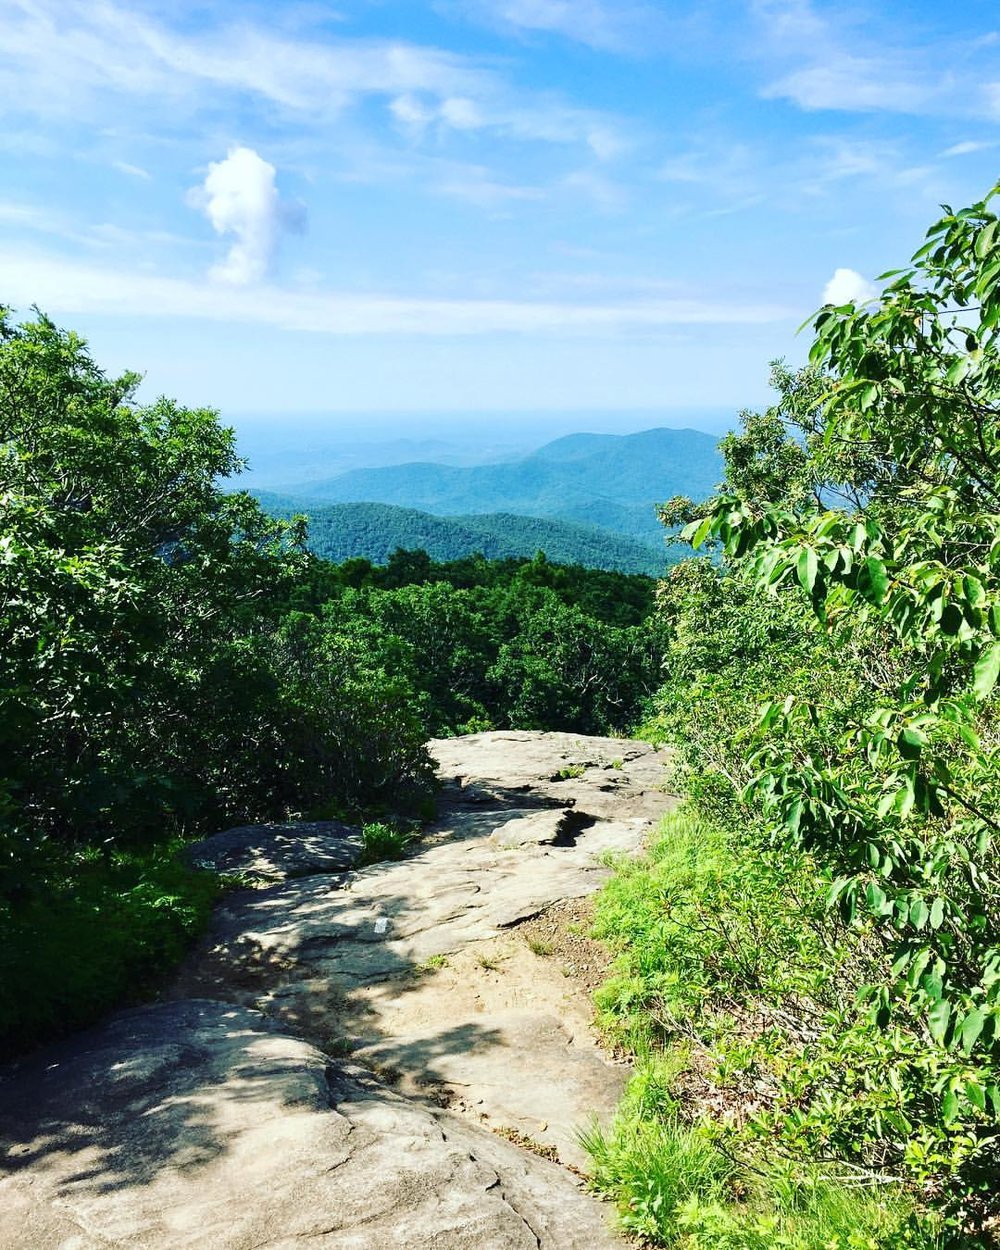  Hiking Blood Mountain on the Appalachian Trail in Georgia 